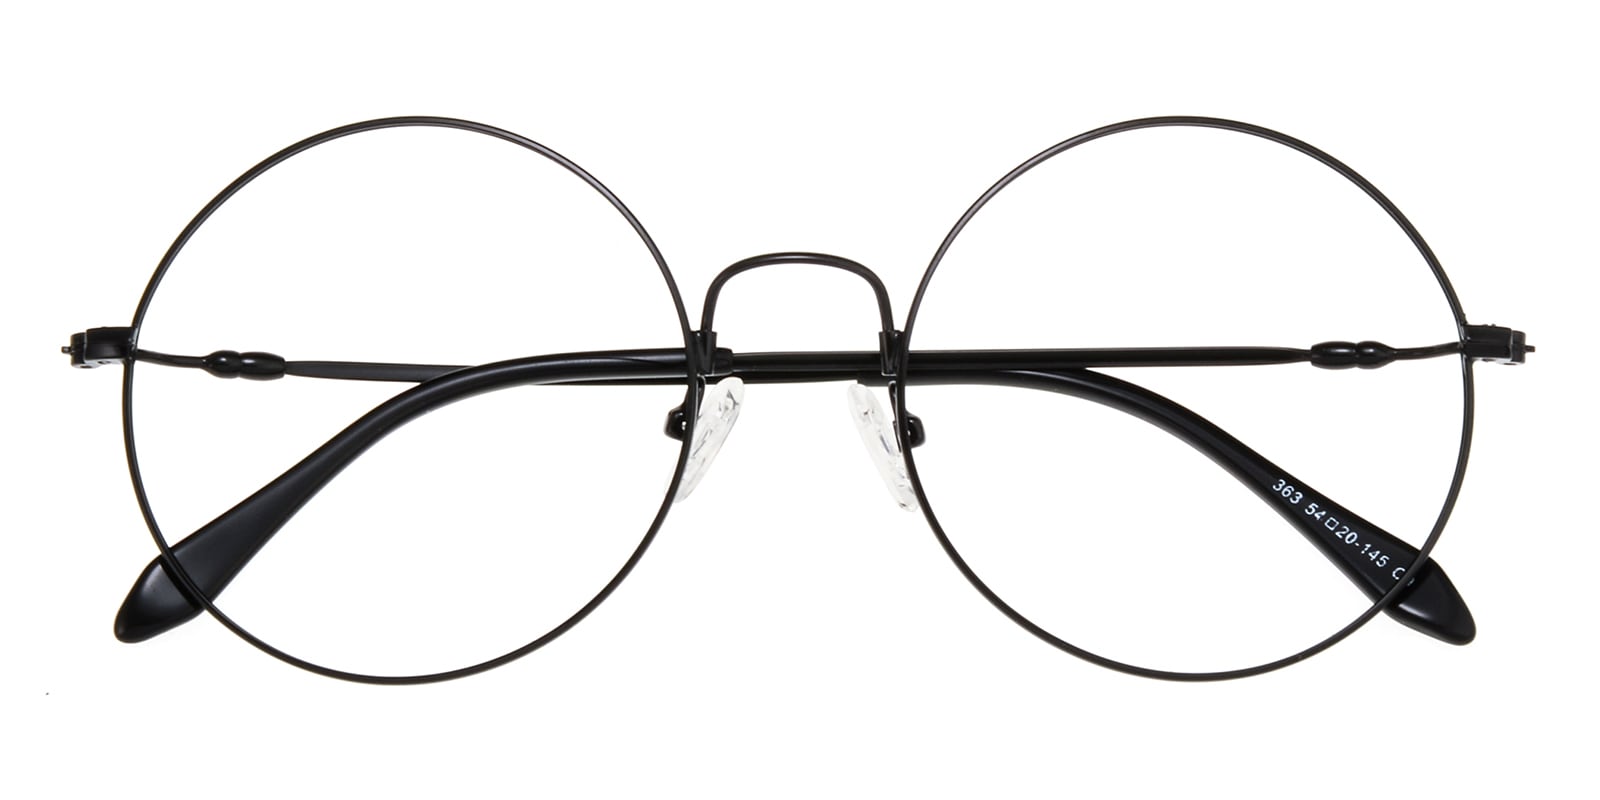 Round Eyeglasses, Full Frame Black Metal - FM1244